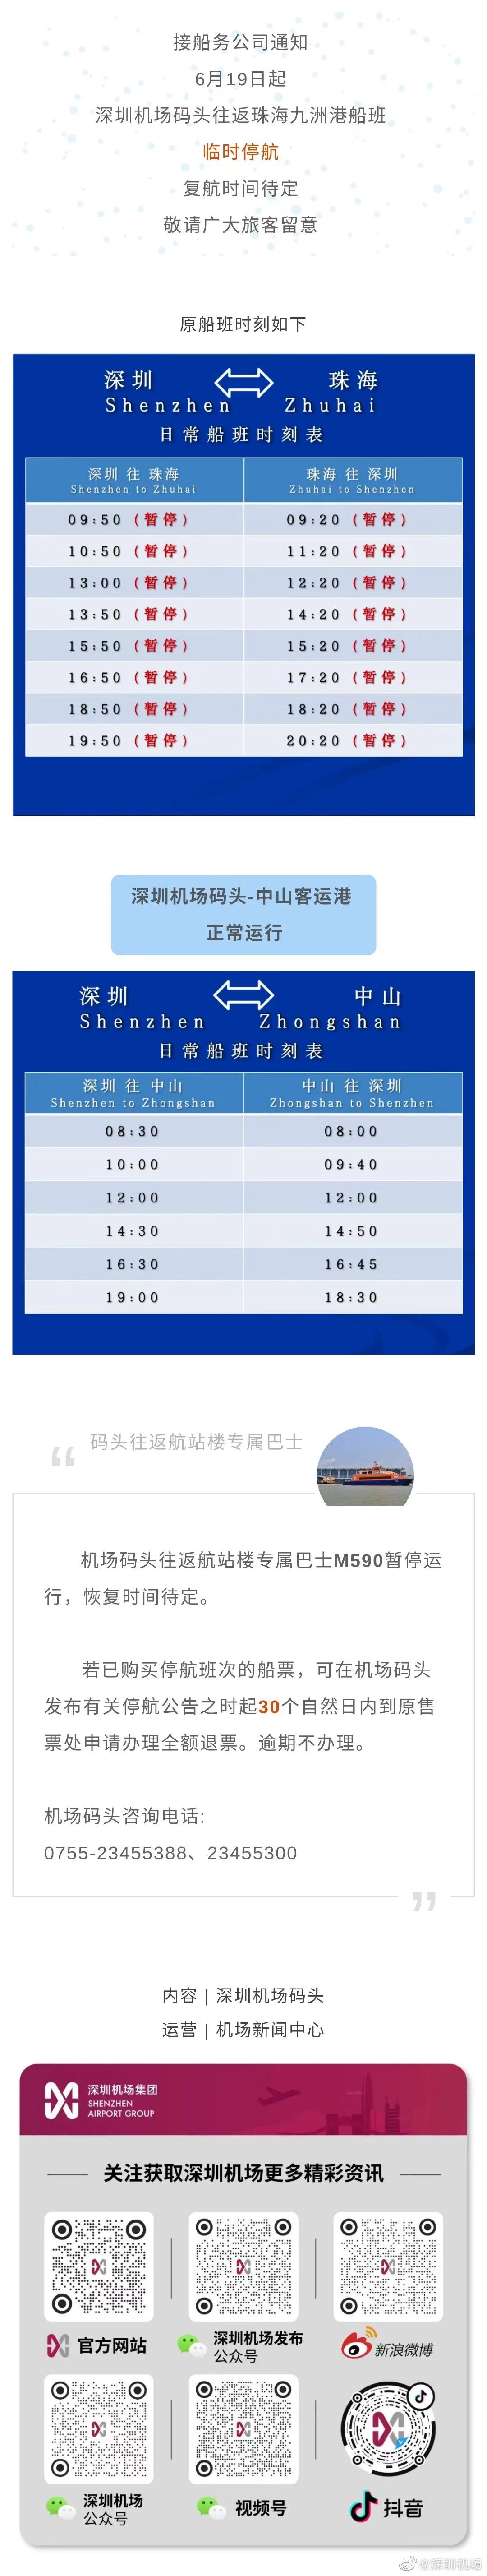 深圳机场码头19日起往返珠海九洲港船班临时停航